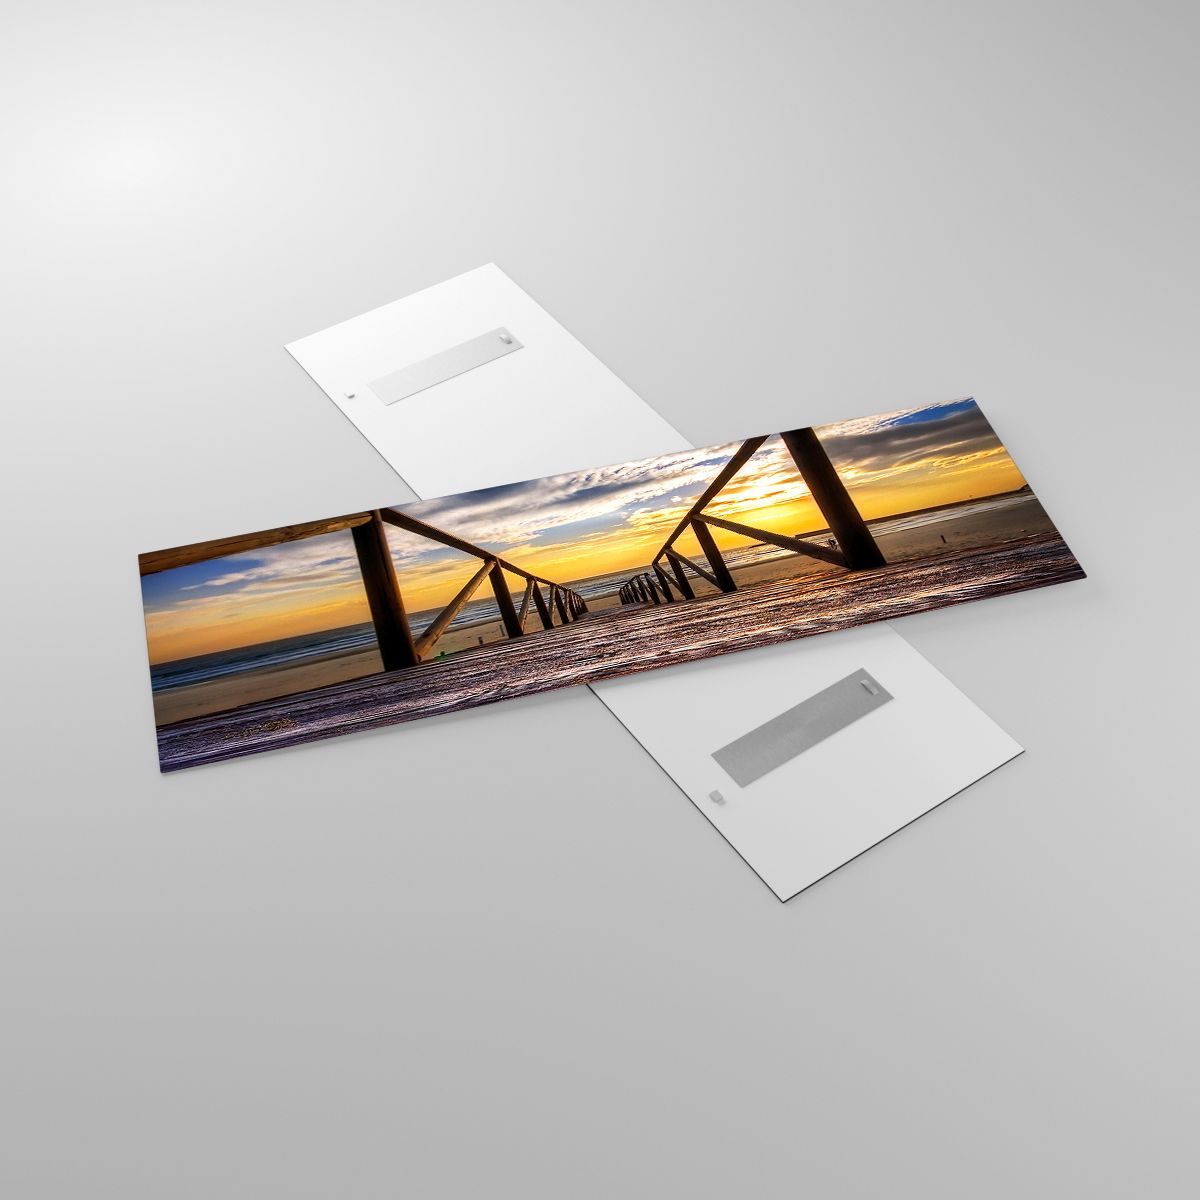 Glasbild Landschaft, Glasbild Der Sonnenuntergang, Glasbild Meer, Glasbild Natur, Glasbild Abstieg Zum Strand